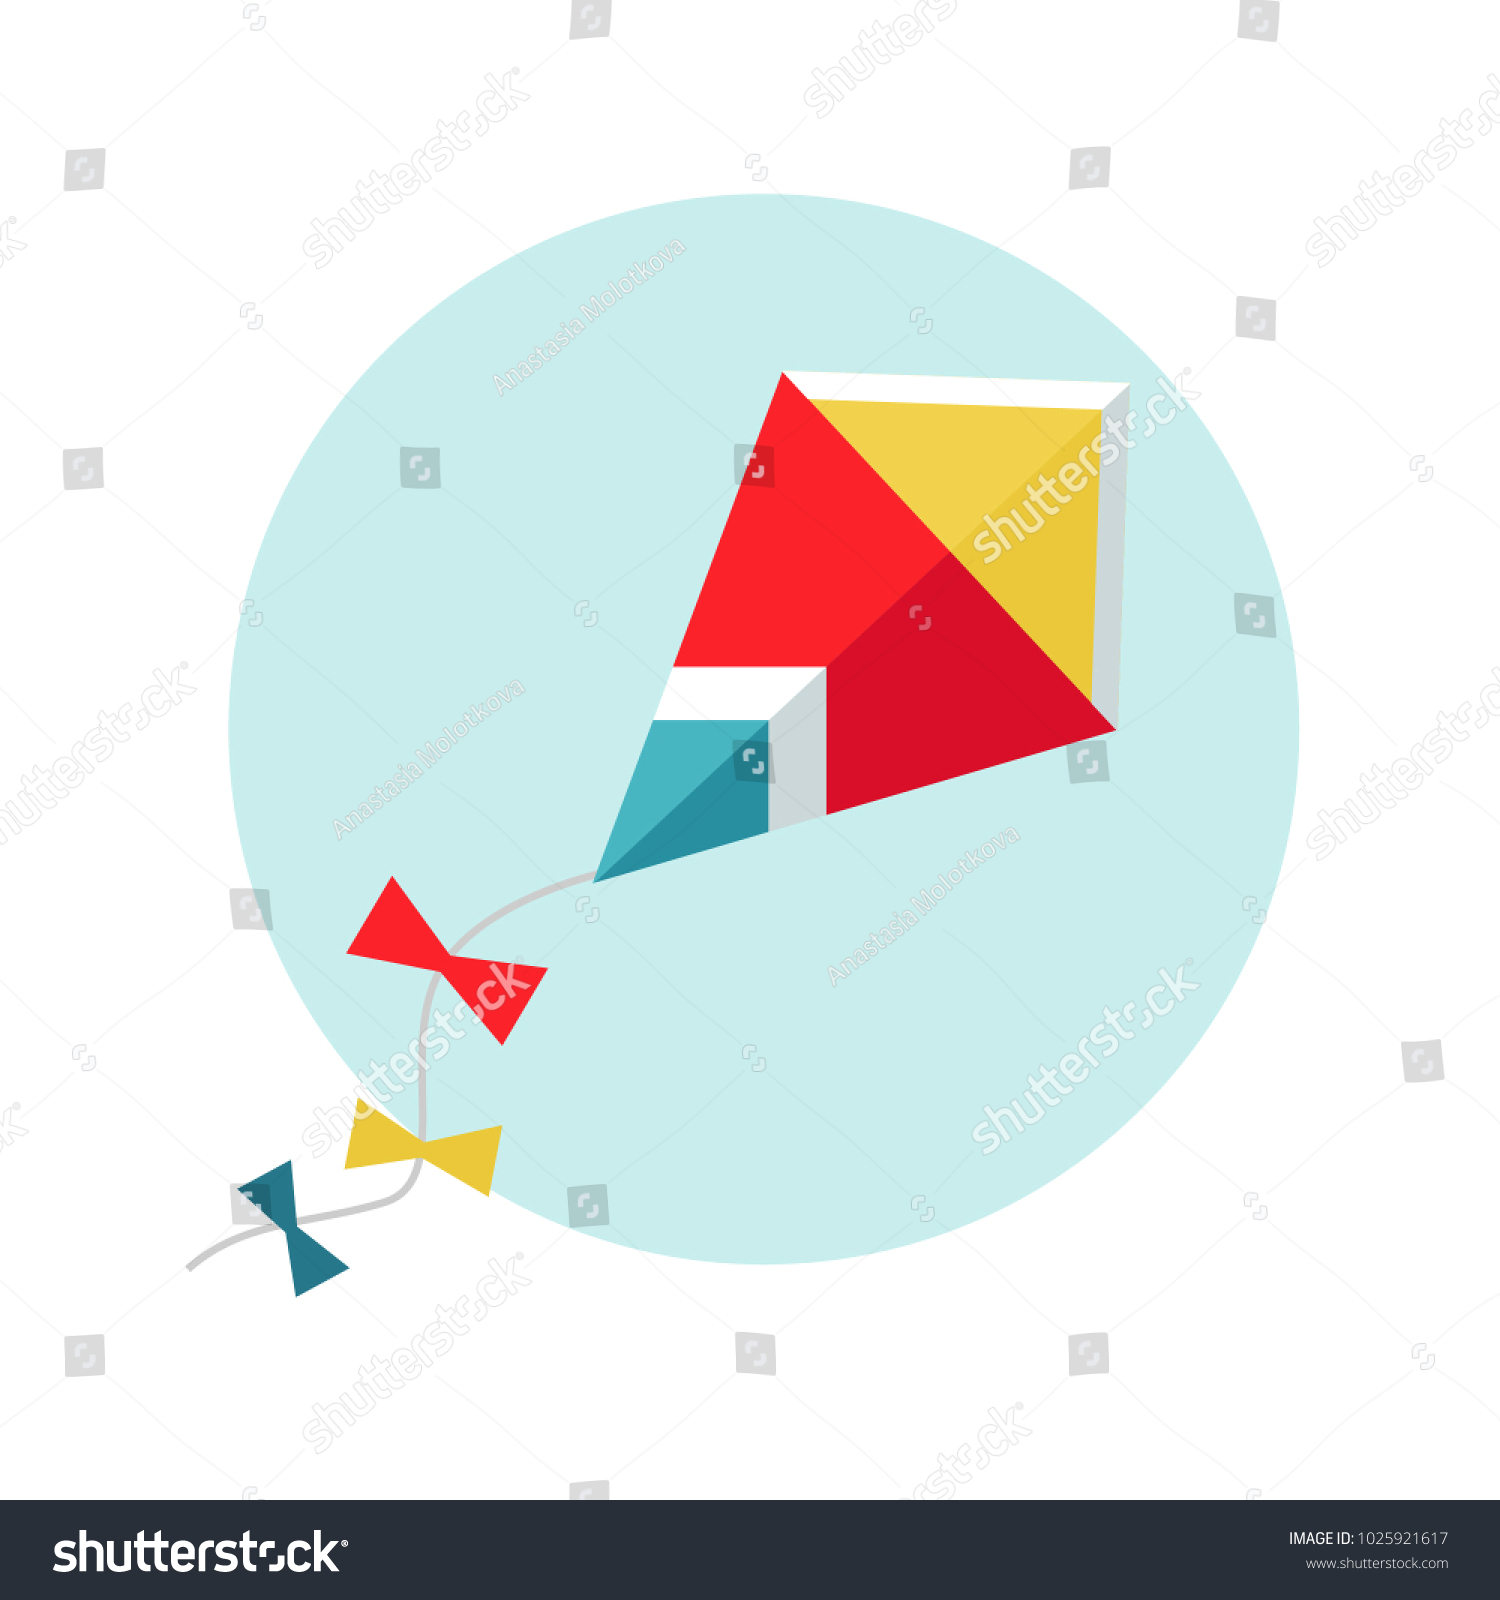 SVG of Kite vector illustration. Flat kite icon. Red kite in the sky. Makar Sankranti festival.
 svg